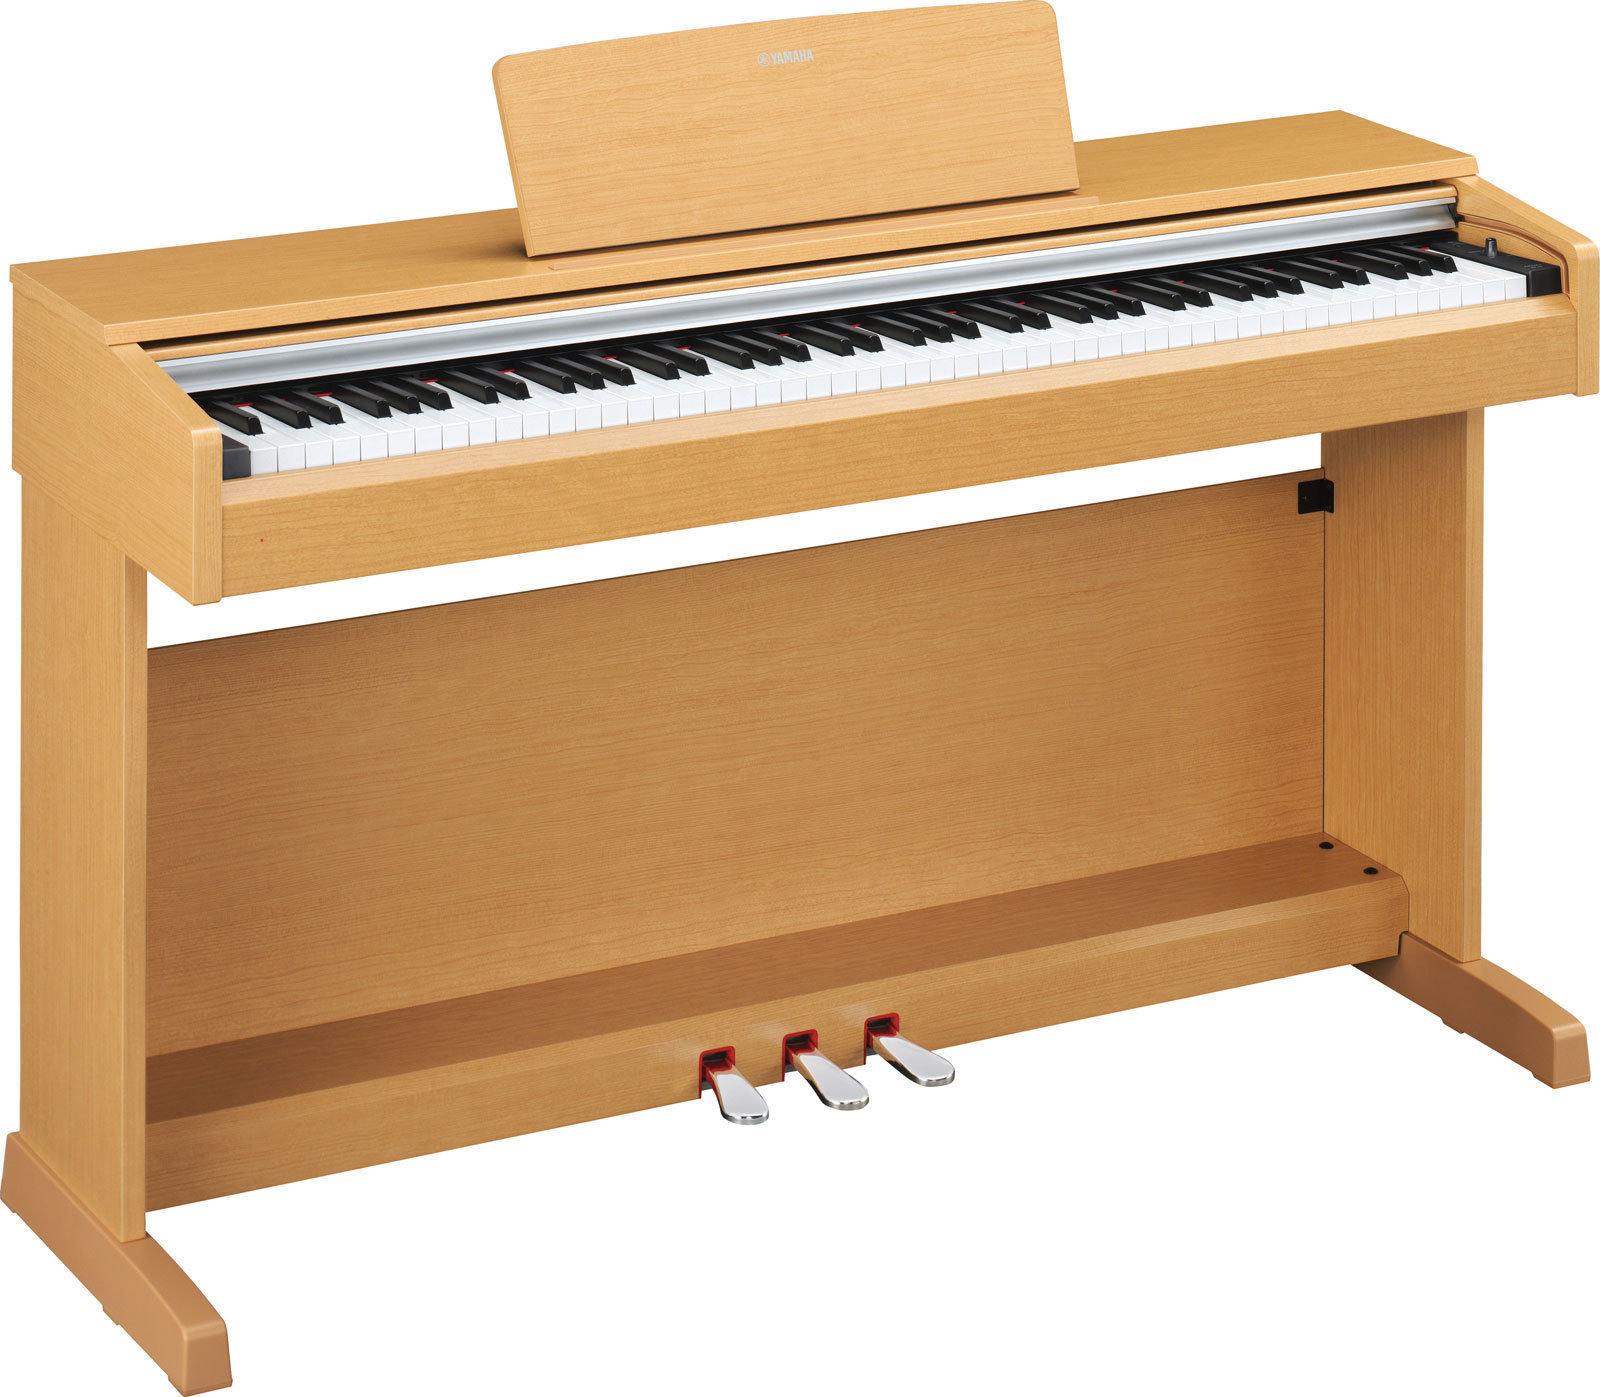 Piano digital Yamaha YDP 142 Arius Cherry